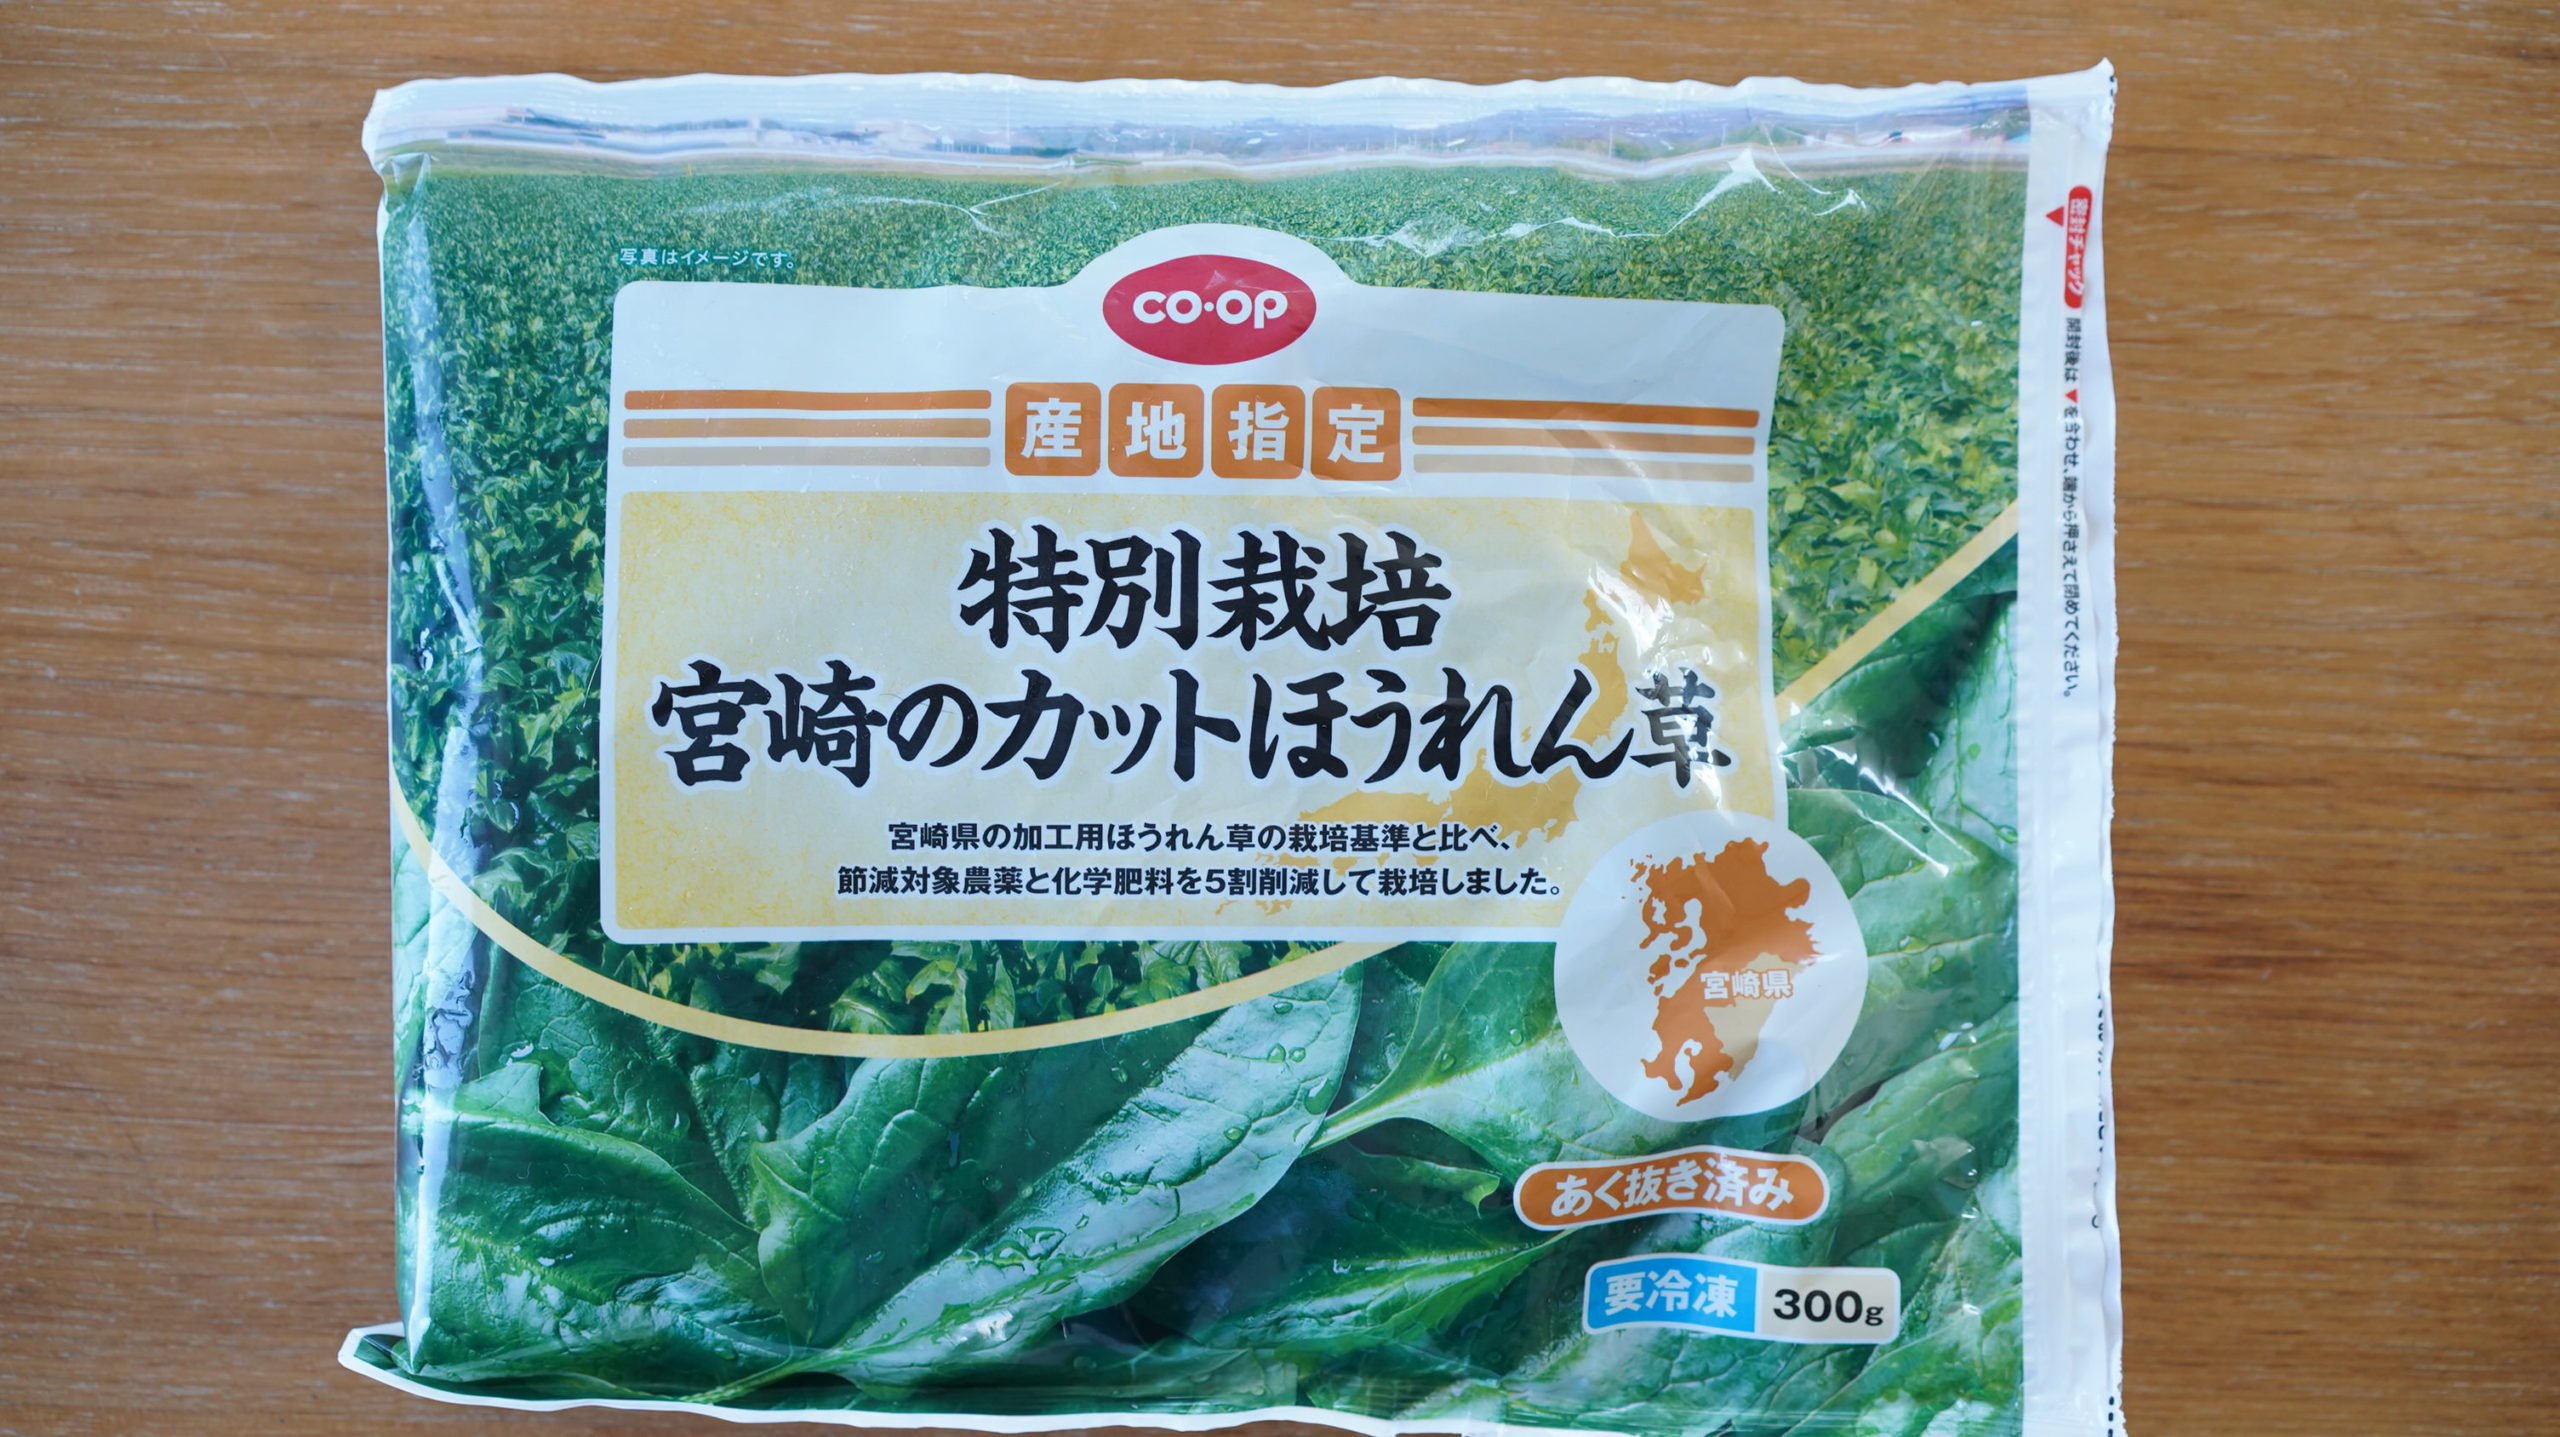 生協coop宅配の冷凍食品「特別栽培・宮崎のカットほうれん草」のパッケージ写真